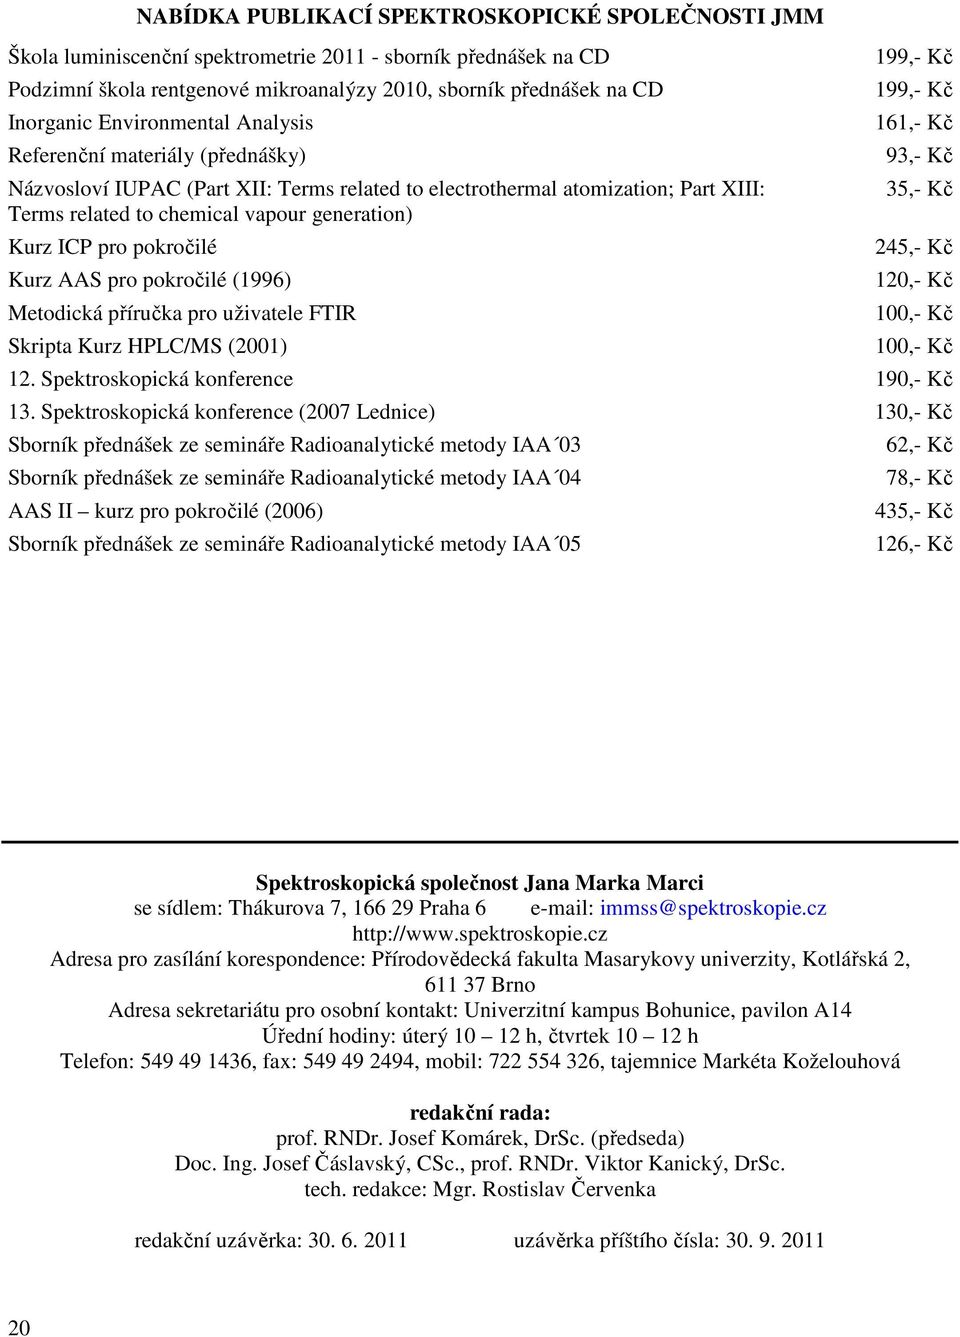 pokročilé Kurz AAS pro pokročilé (1996) Metodická příručka pro uživatele FTIR Skripta Kurz HPLC/MS (2001) 199,- Kč 199,- Kč 161,- Kč 93,- Kč 35,- Kč 245,- Kč 120,- Kč 100,- Kč 100,- Kč 12.